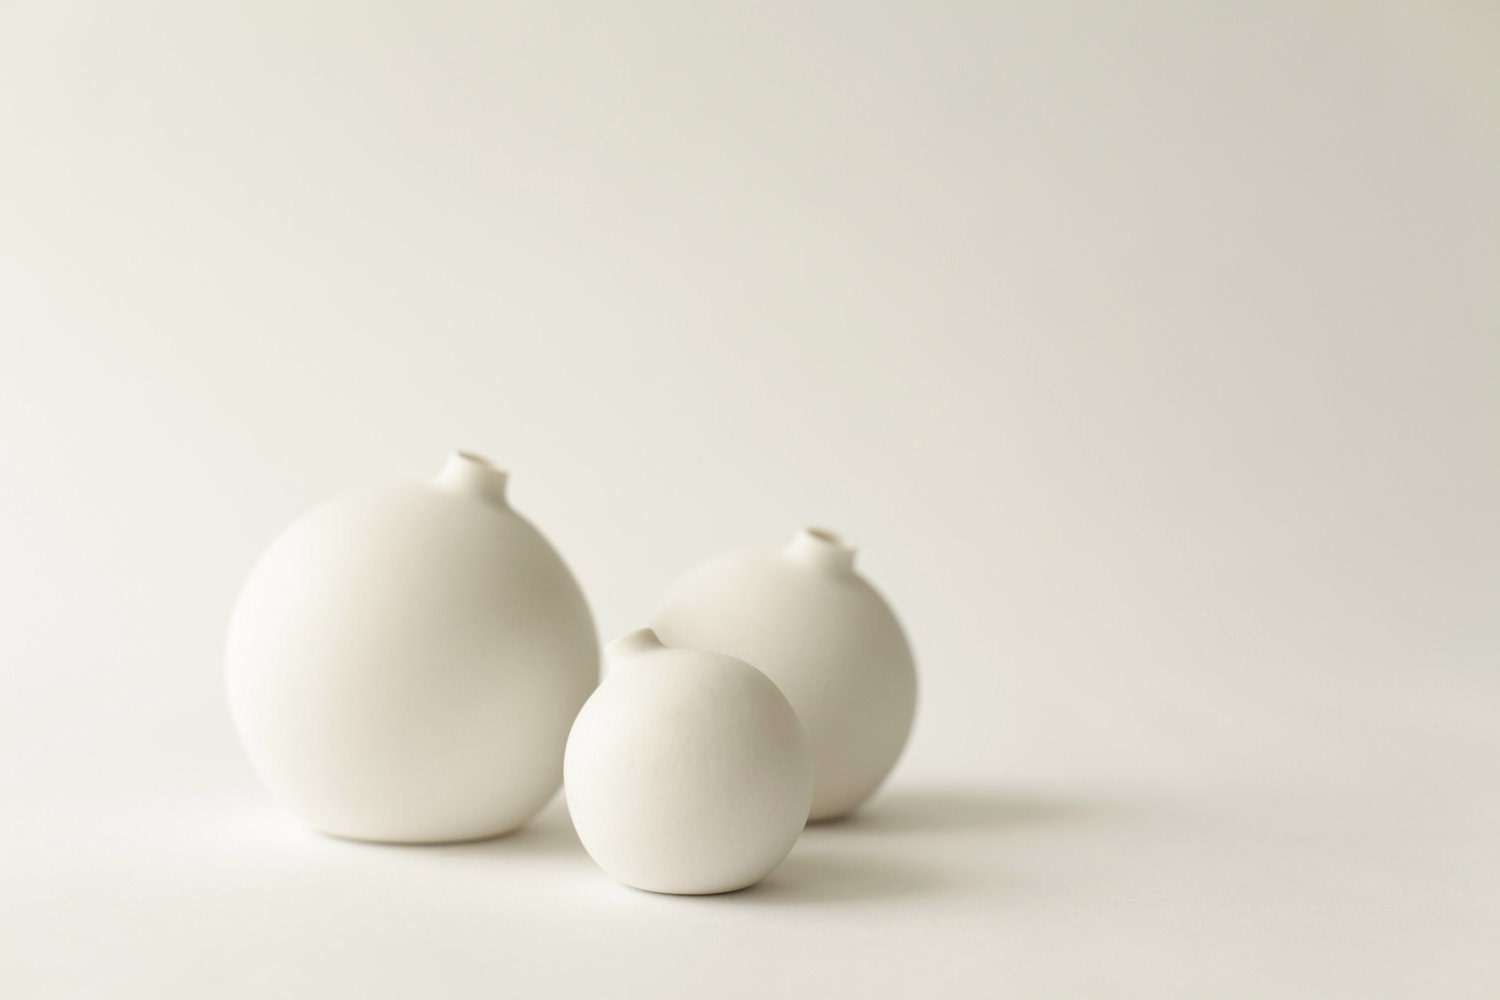 New smaller size set of 3, Small, Medium, Large, porcelain bud vase